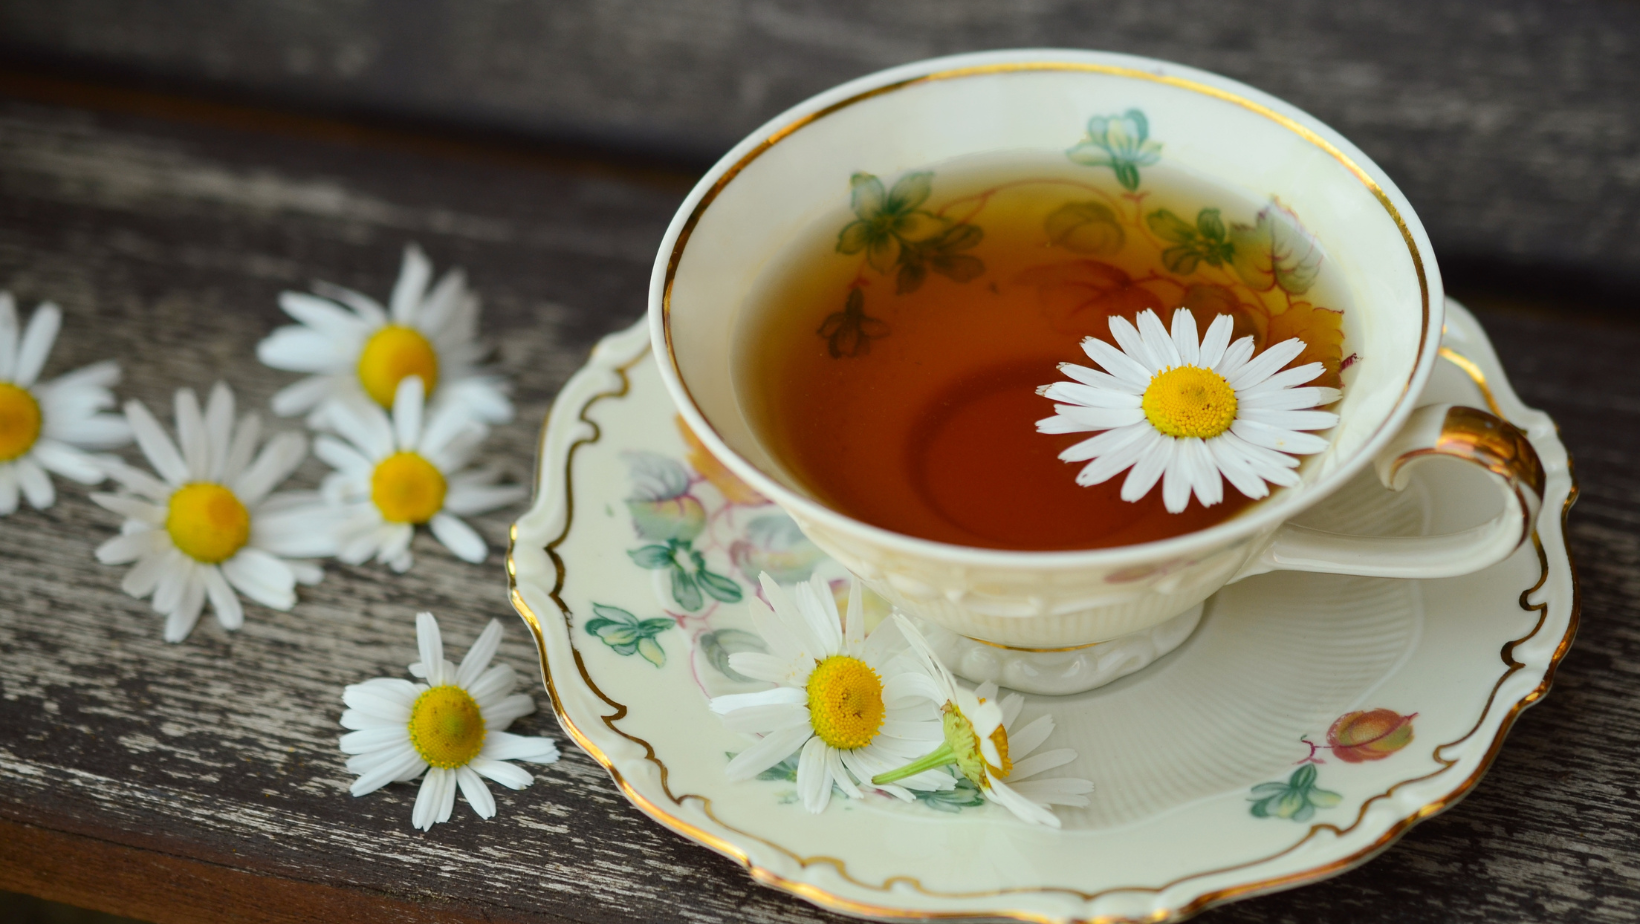 Khám phá trà hoa cúc túi lọc - 1 một trải nghiệm tinh tế cho giác quan - 2